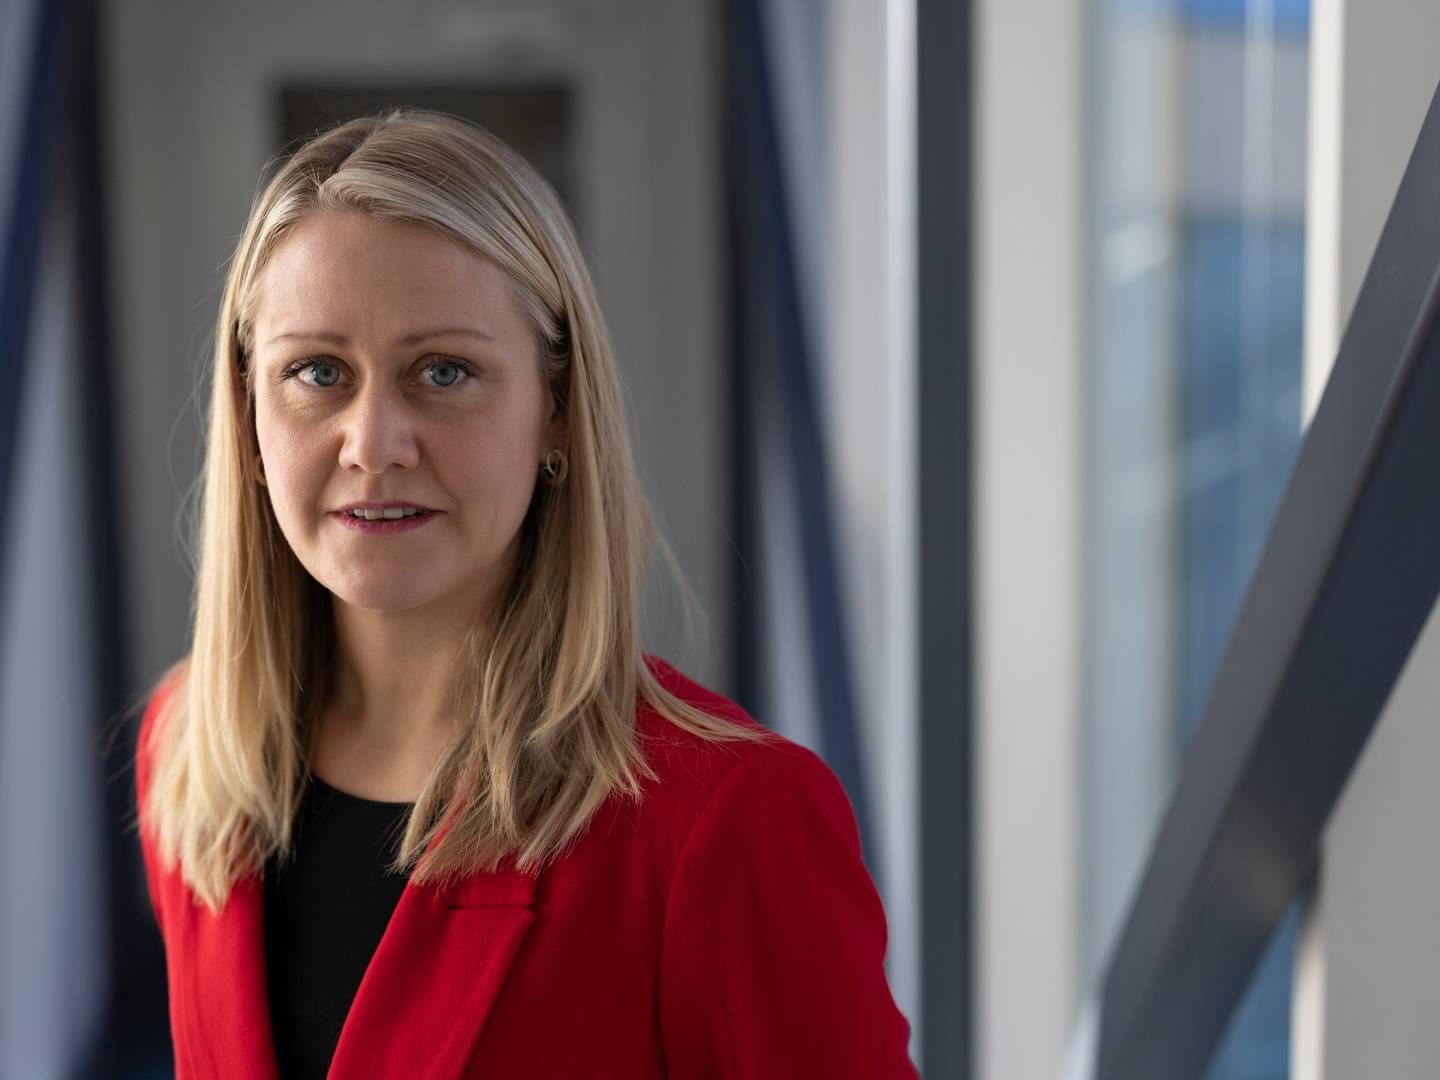 NY STATSSEKRETÆR: Astrid Bergmål er ny statssekretær i olje- og energidepartementet. | Foto: Rune Kongsro, Justis- og beredskapsdepartementet